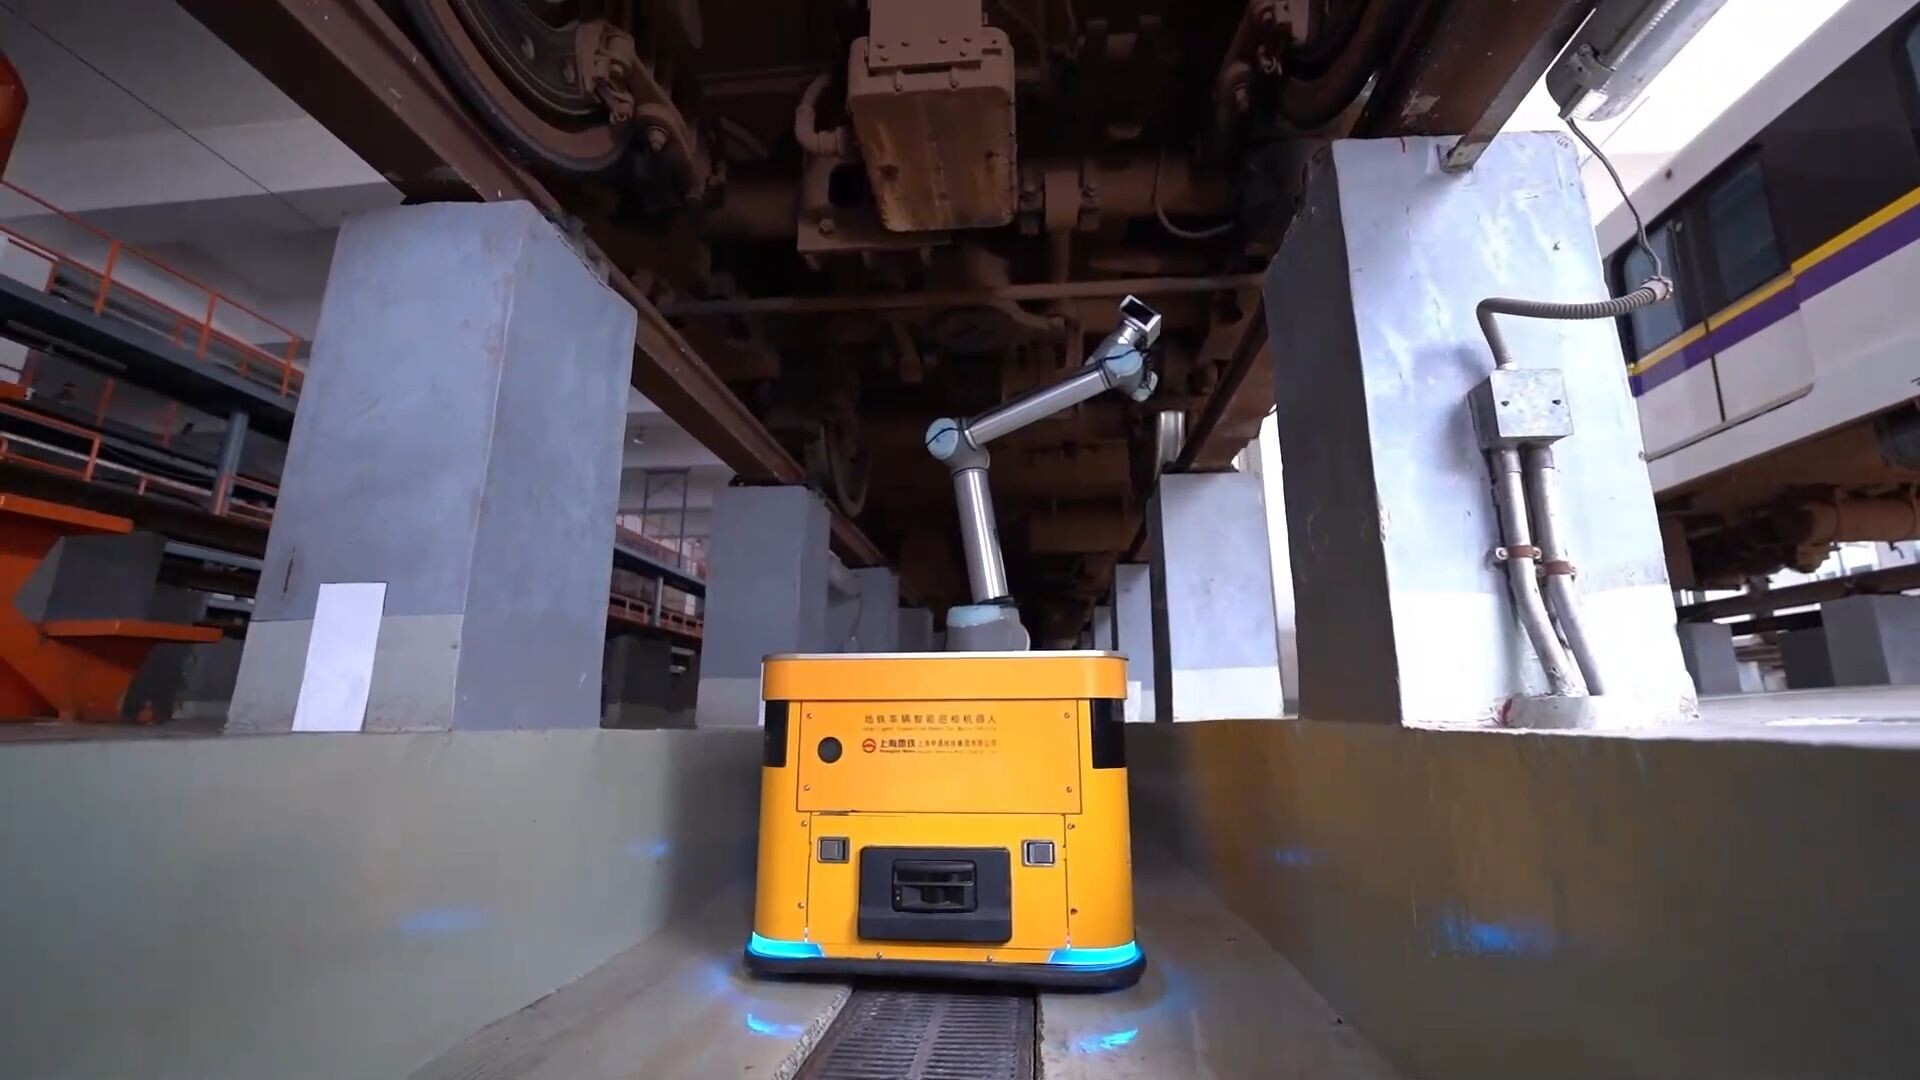 เซี่ยงไฮ้ใช้ 'หุ่นยนต์อัจฉริยะ' ช่วยงานตรวจสอบรถไฟใต้ดิน